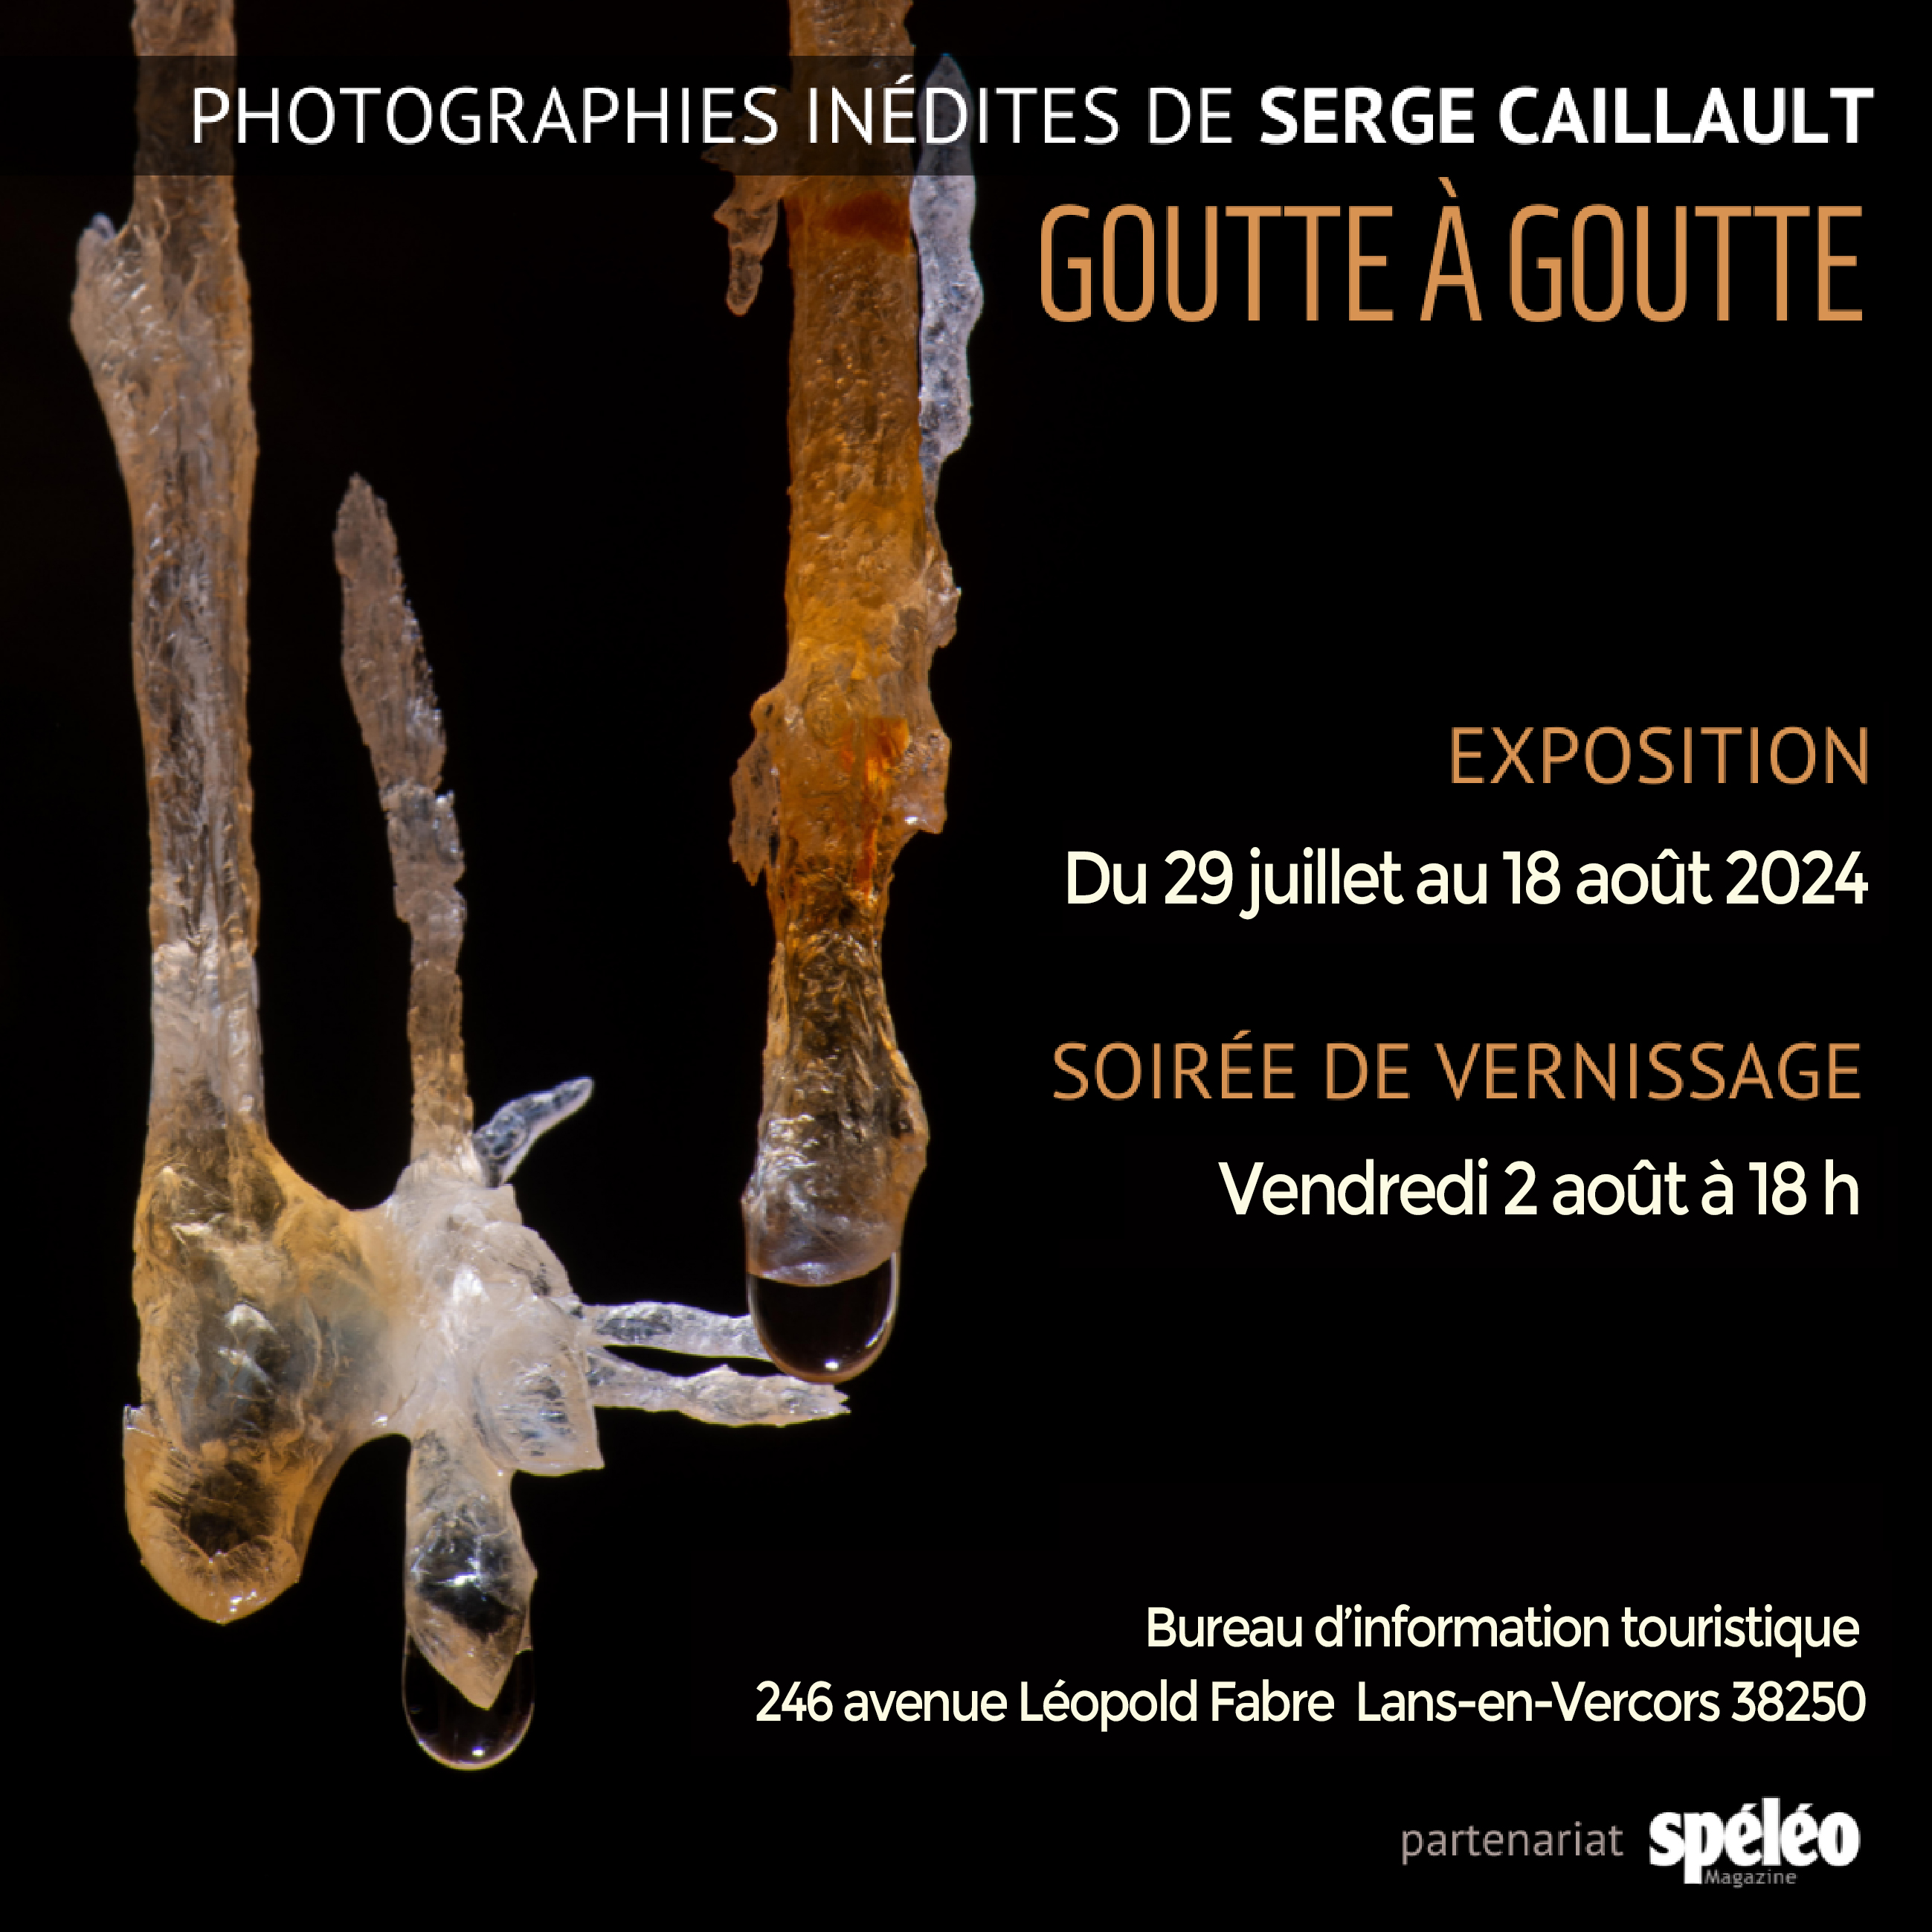 Exposition photographique de Serge CAILLAULT - Goutte à goutte